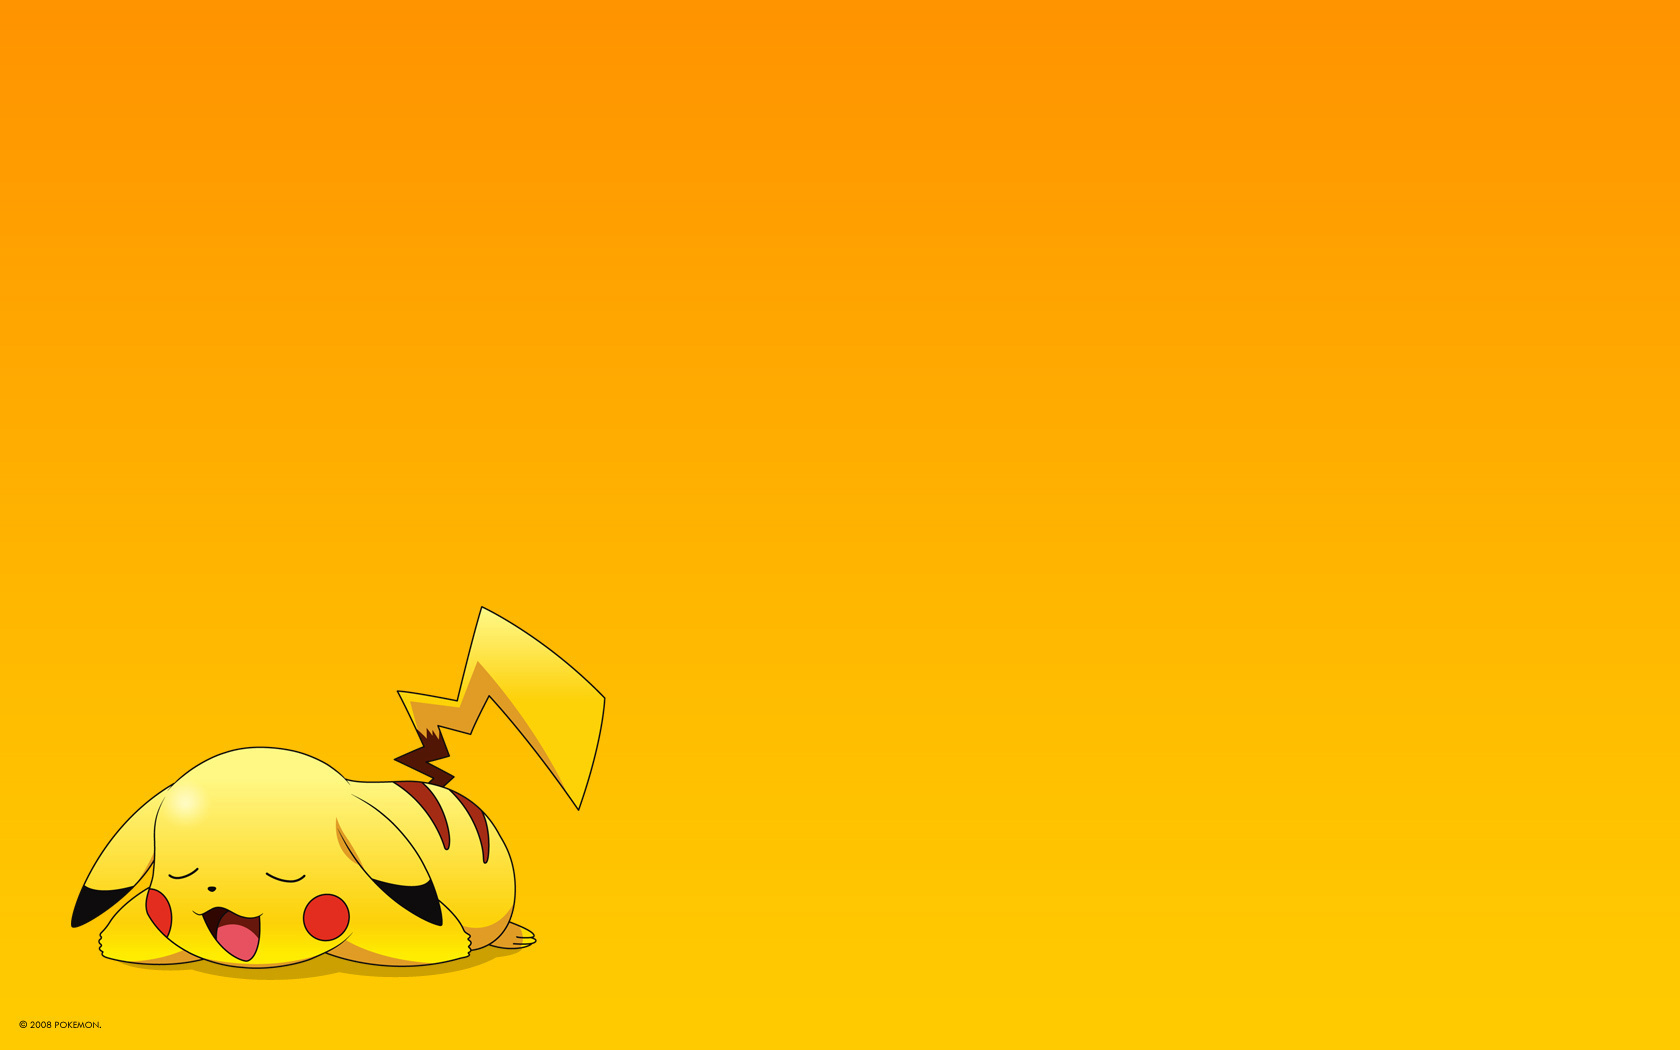 Description Cute Pikachu Wallpaper is a hi res Wallpaper for pc